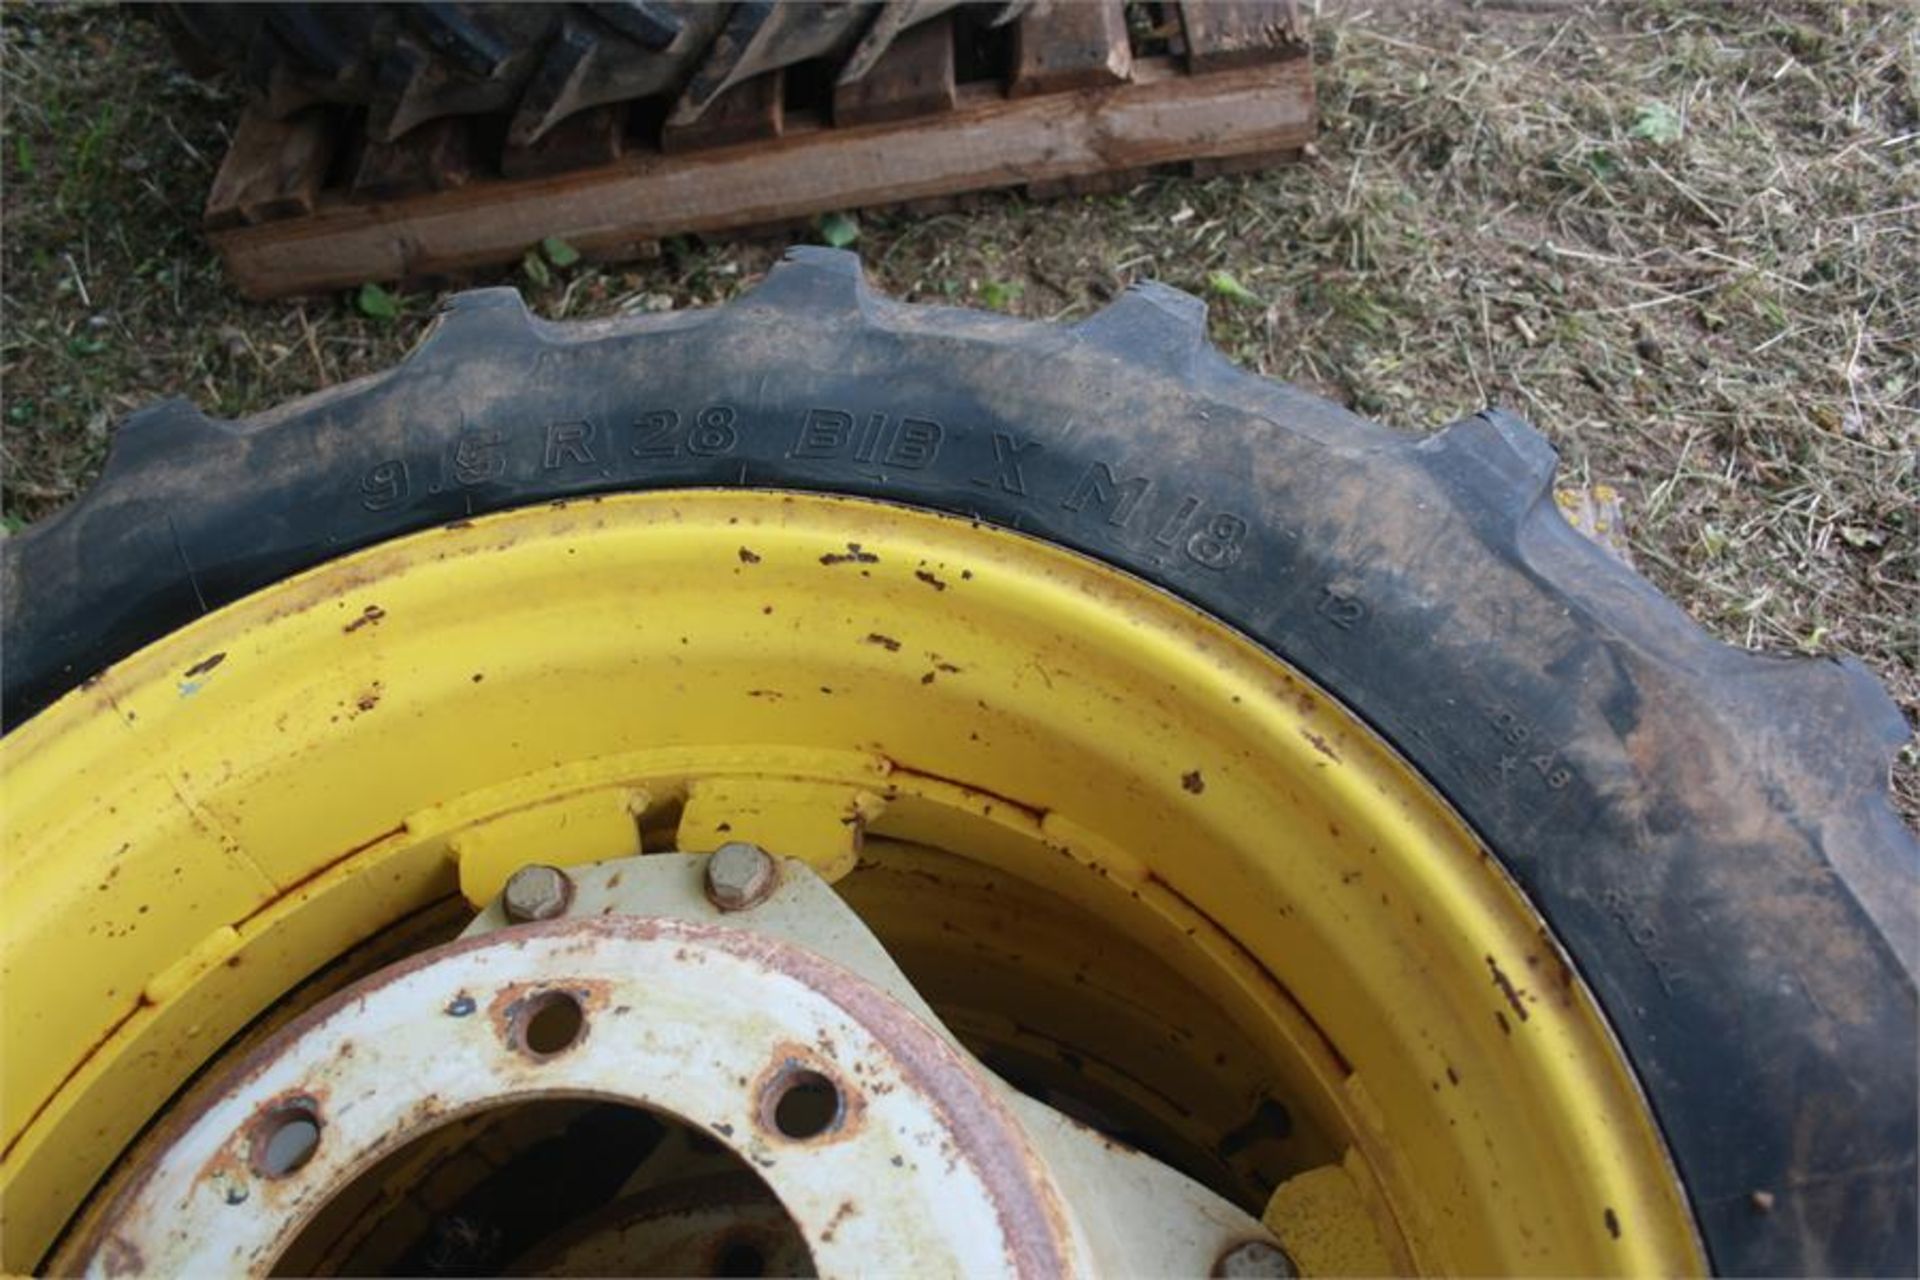 Pair of 9.5 R 28 row crop wheels - Image 2 of 2